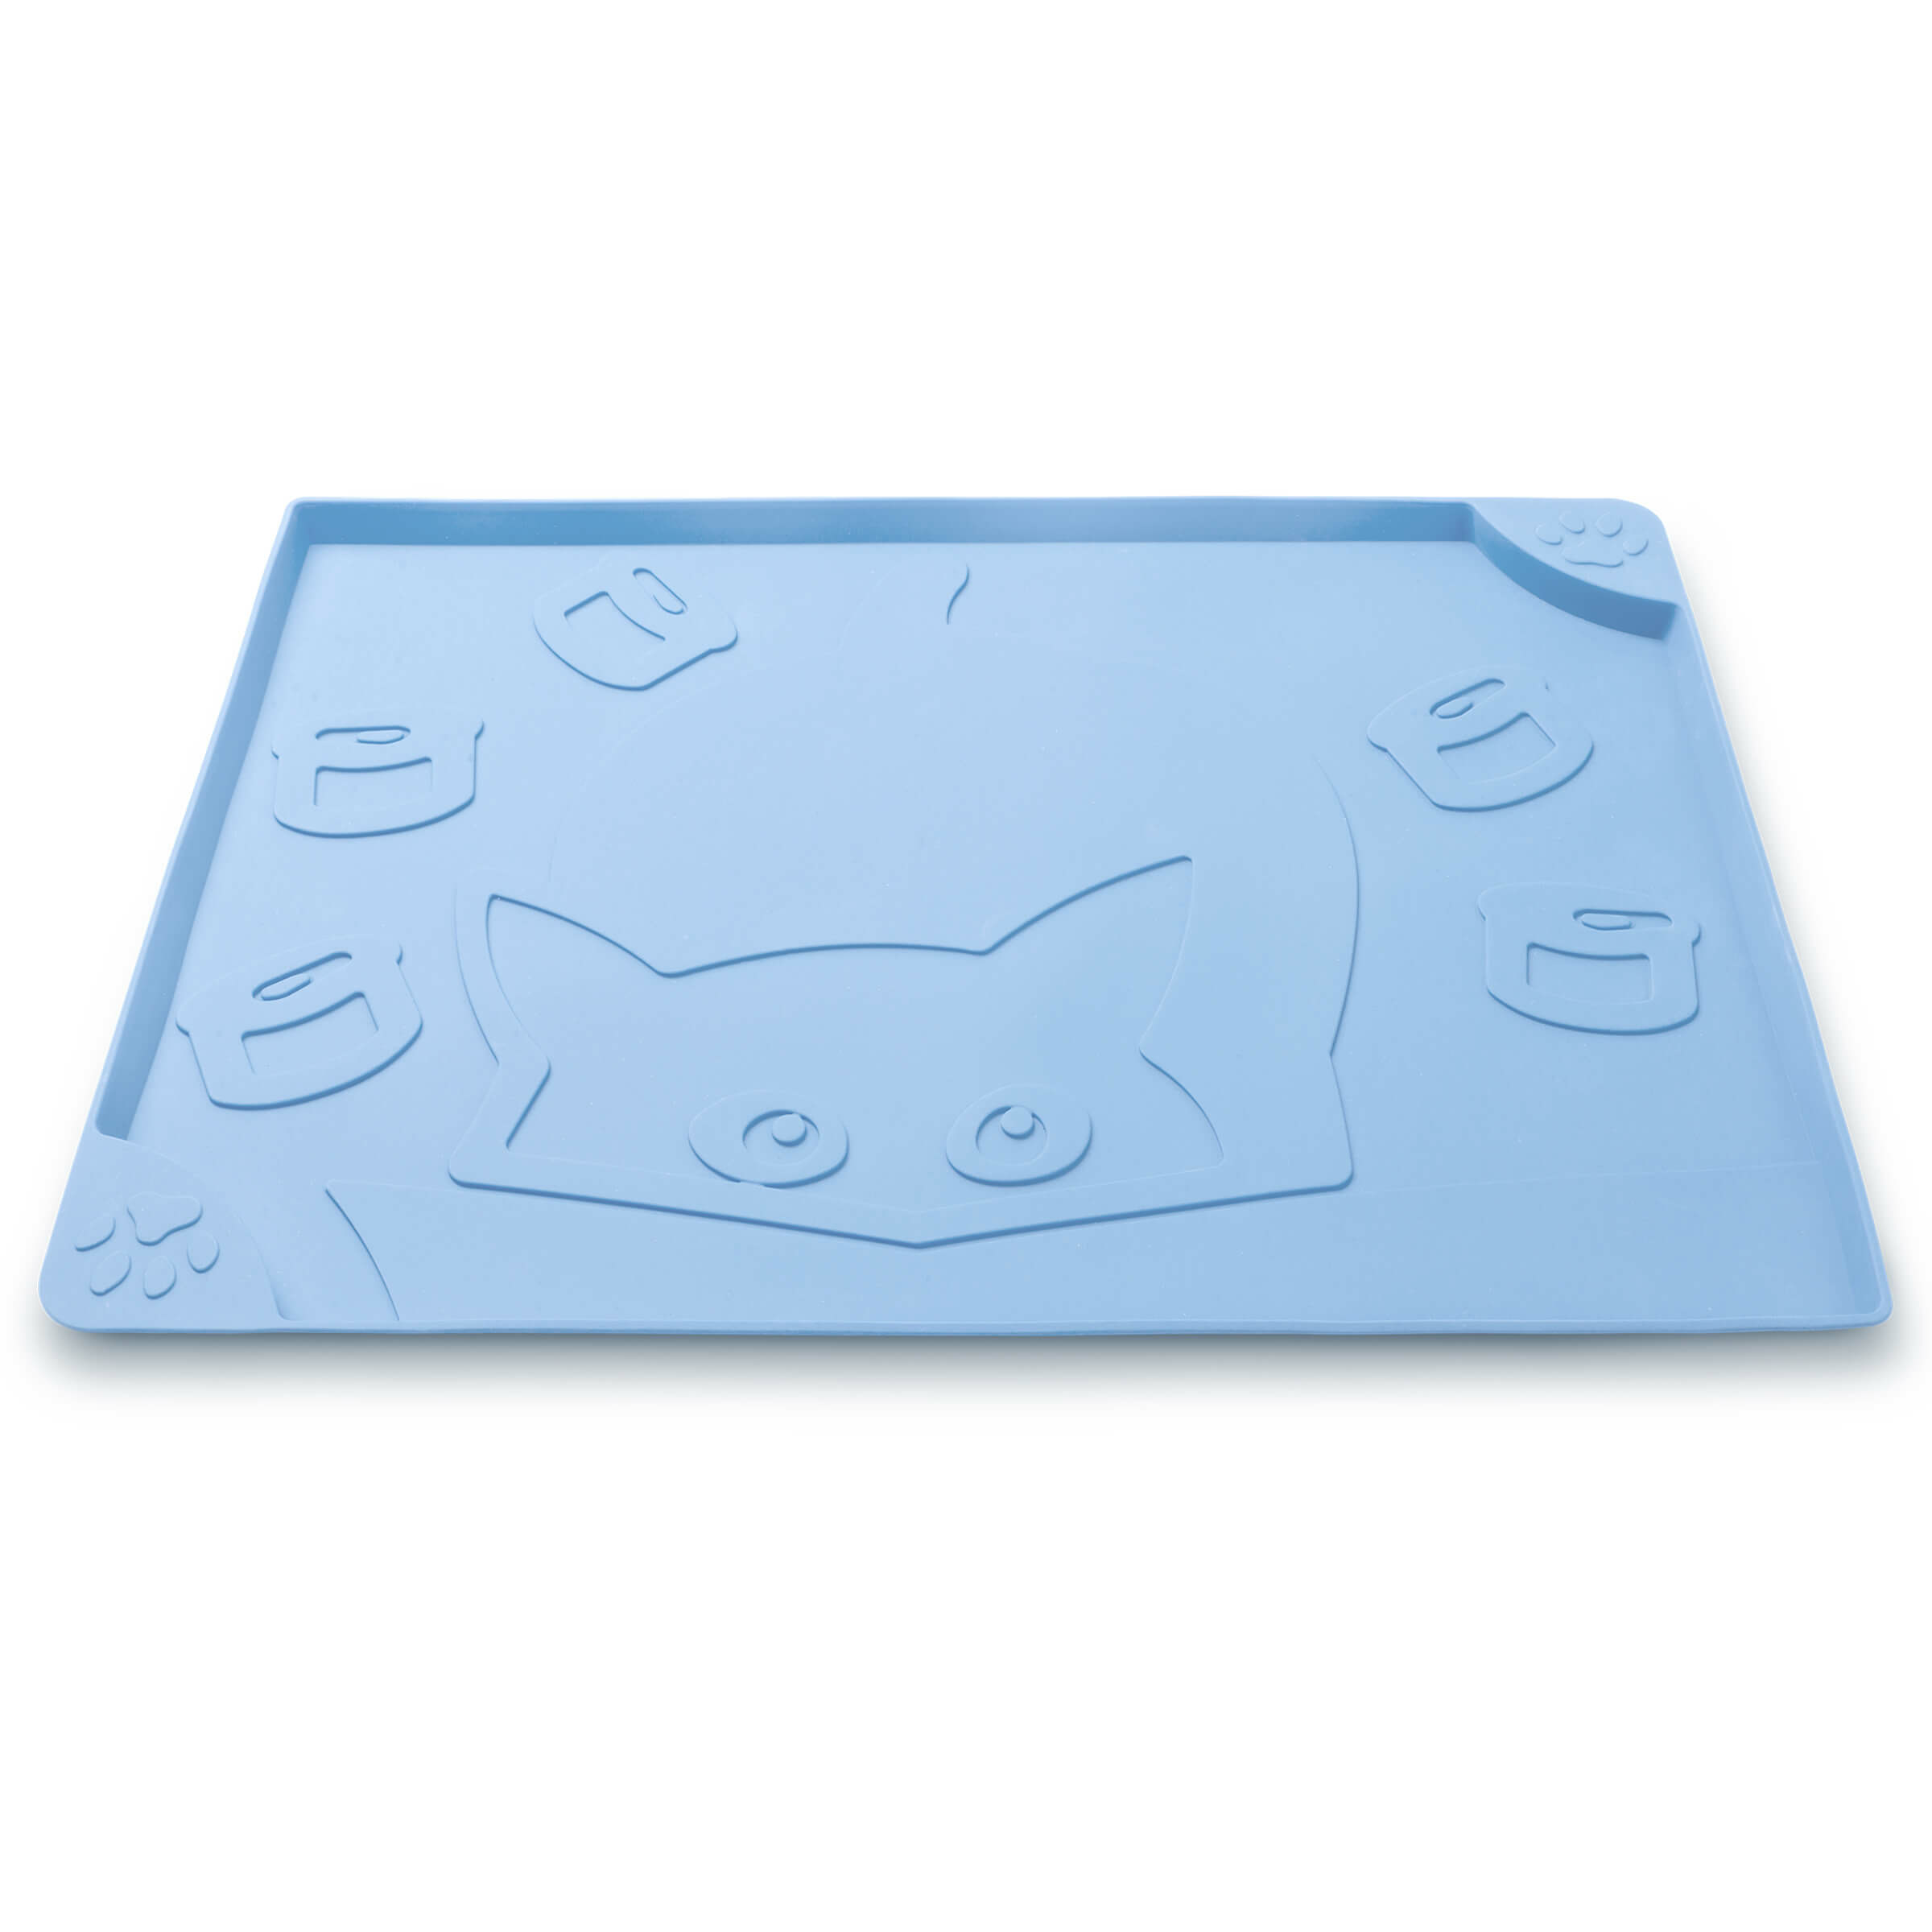 Freezack Tapis de gamelle Square Cat&Cans bleu